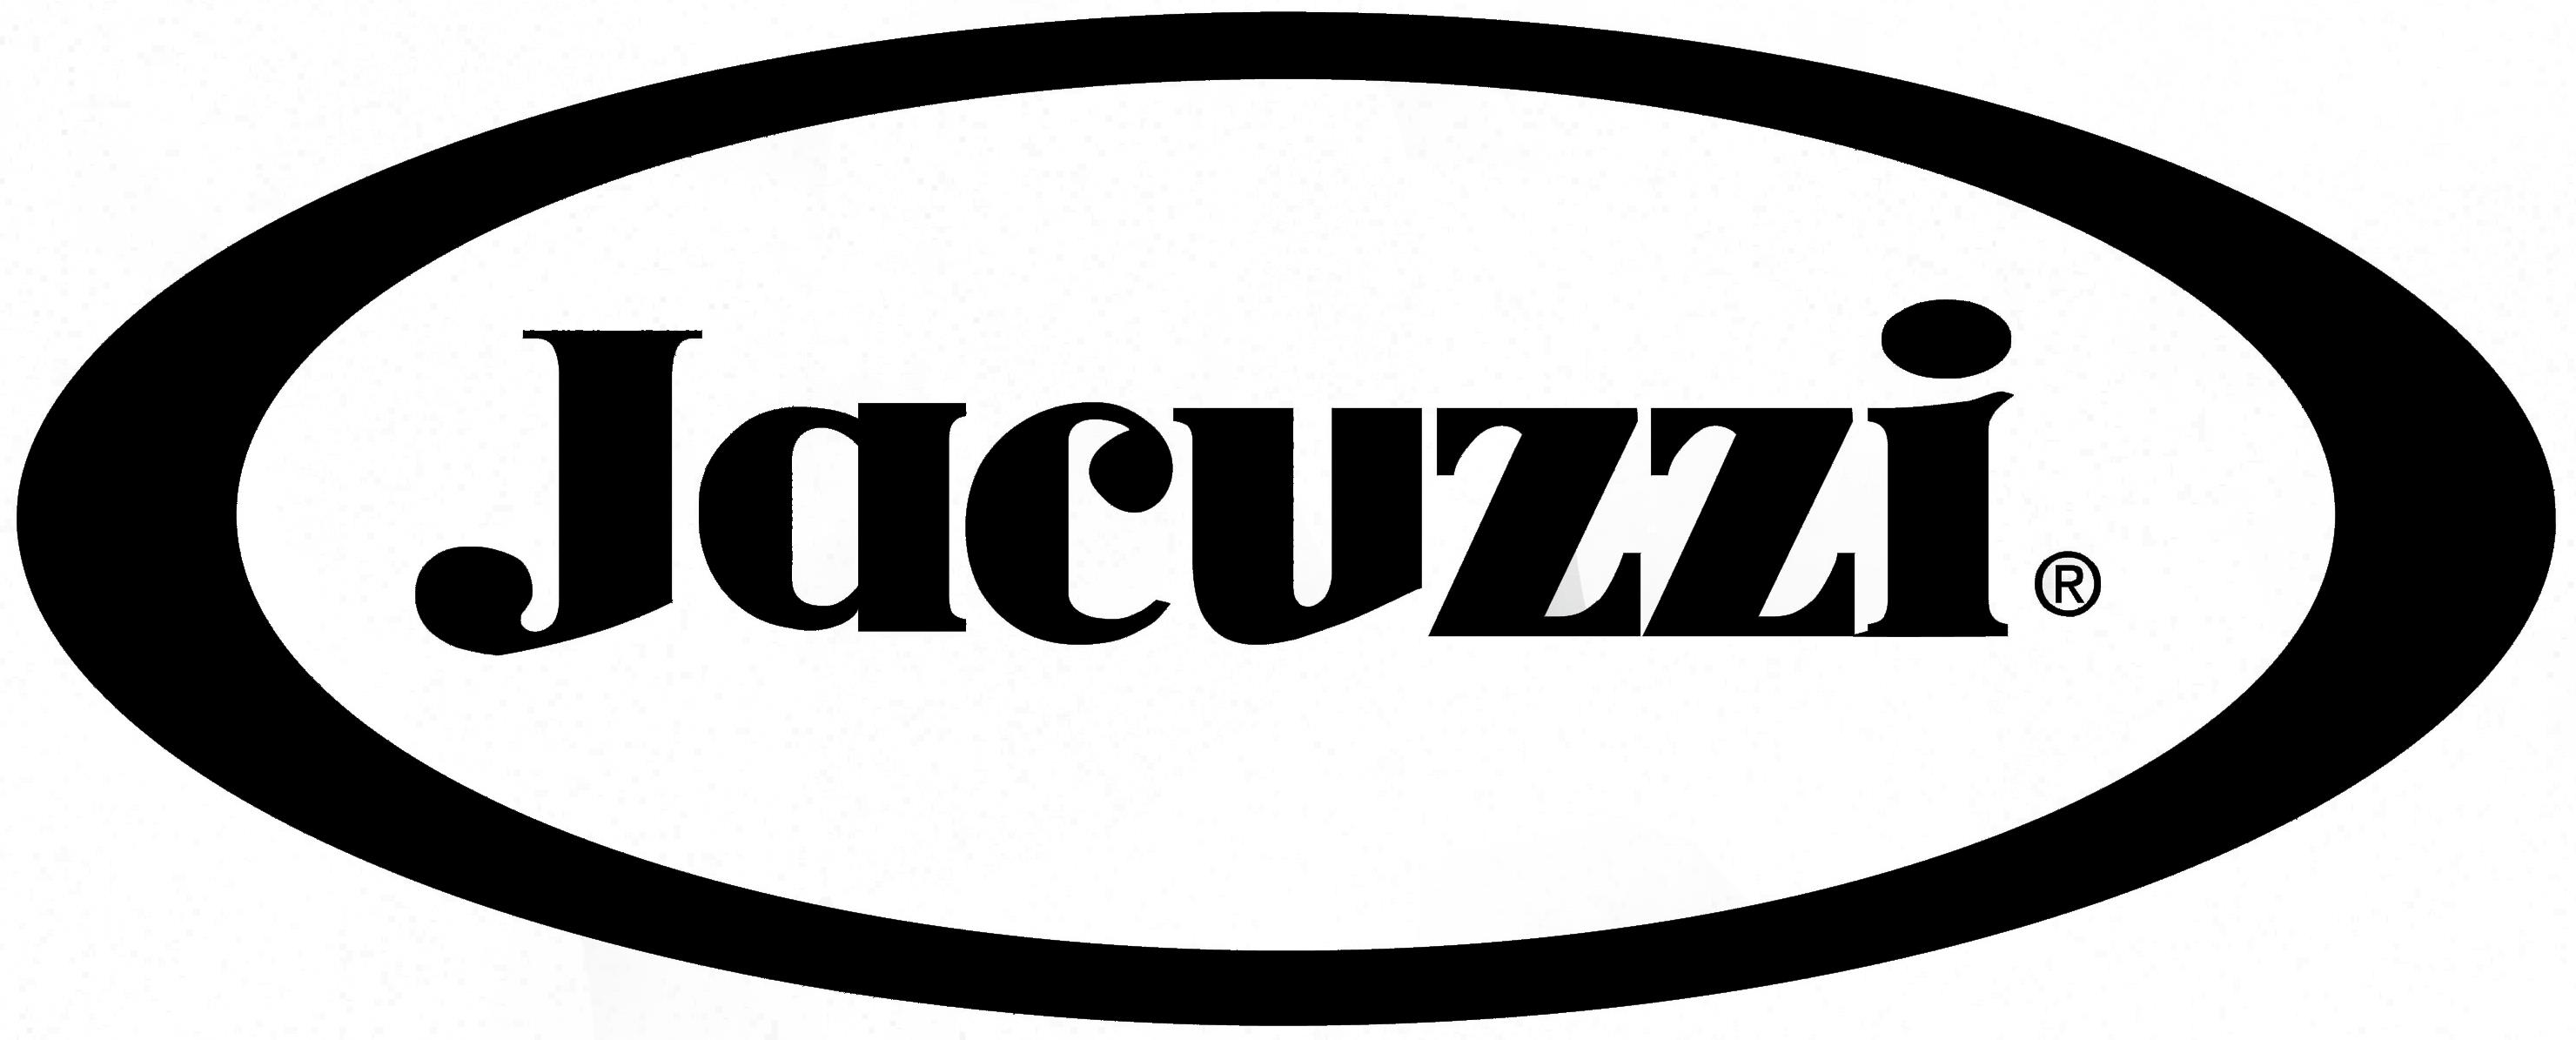 Jacuzzi logo